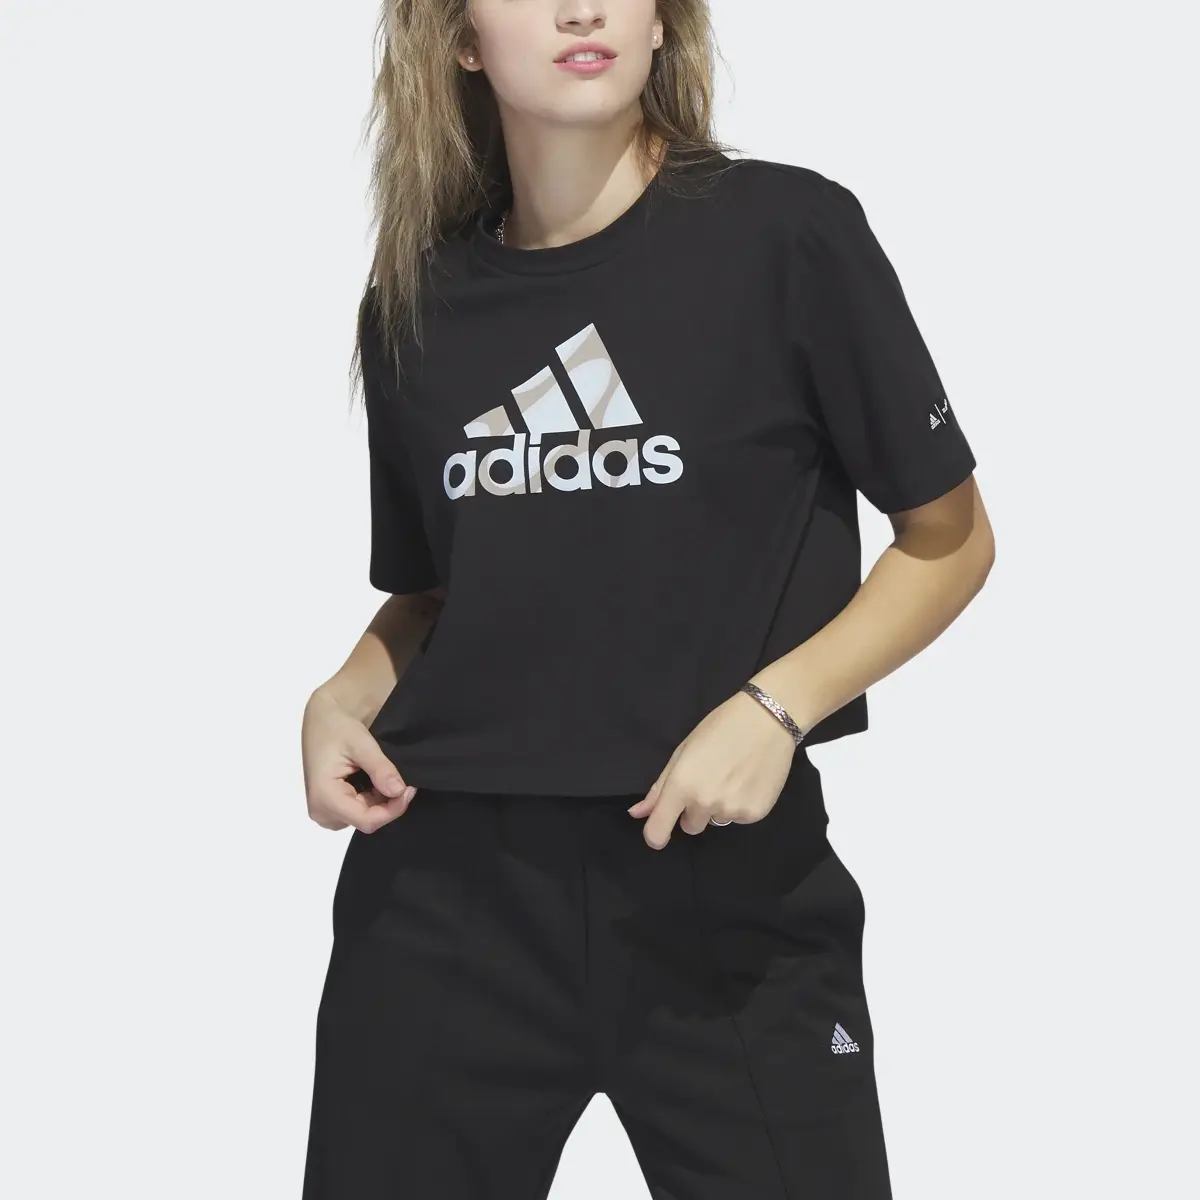 Adidas T-shirt Marimekko Crop. 1